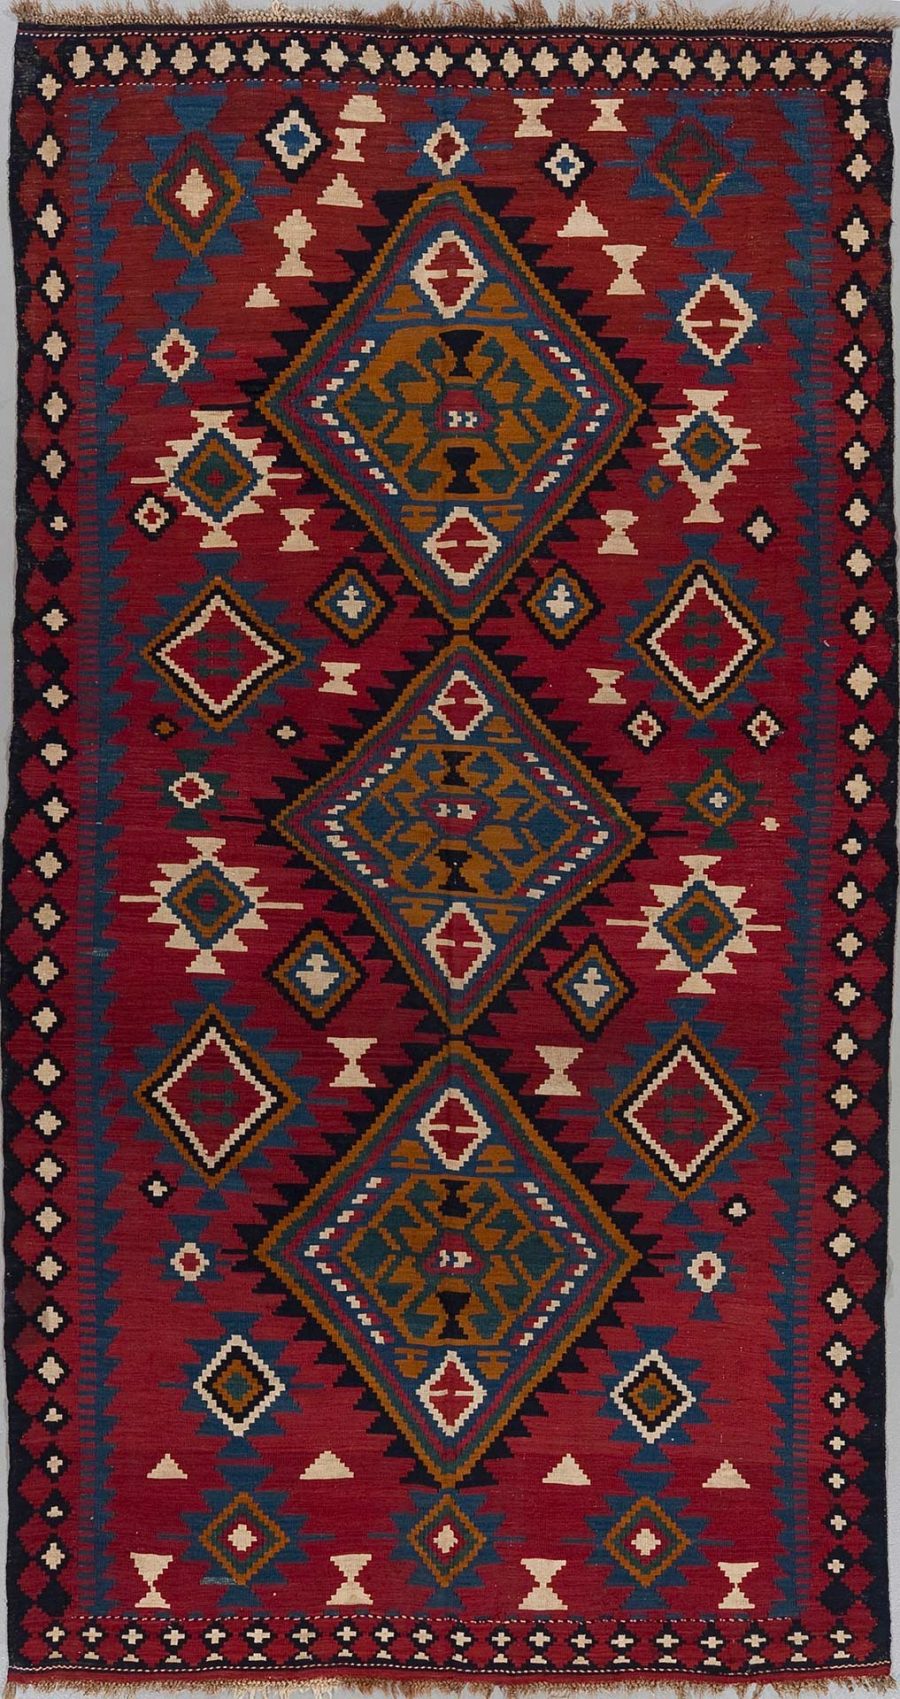 Traditioneller handgewebter Teppich mit ineinandergreifenden geometrischen Mustern in Rot-, Blau- und Beigetönen mit drei großen zentralen Diamantfiguren und aufwendigen Rahmenmotiven.